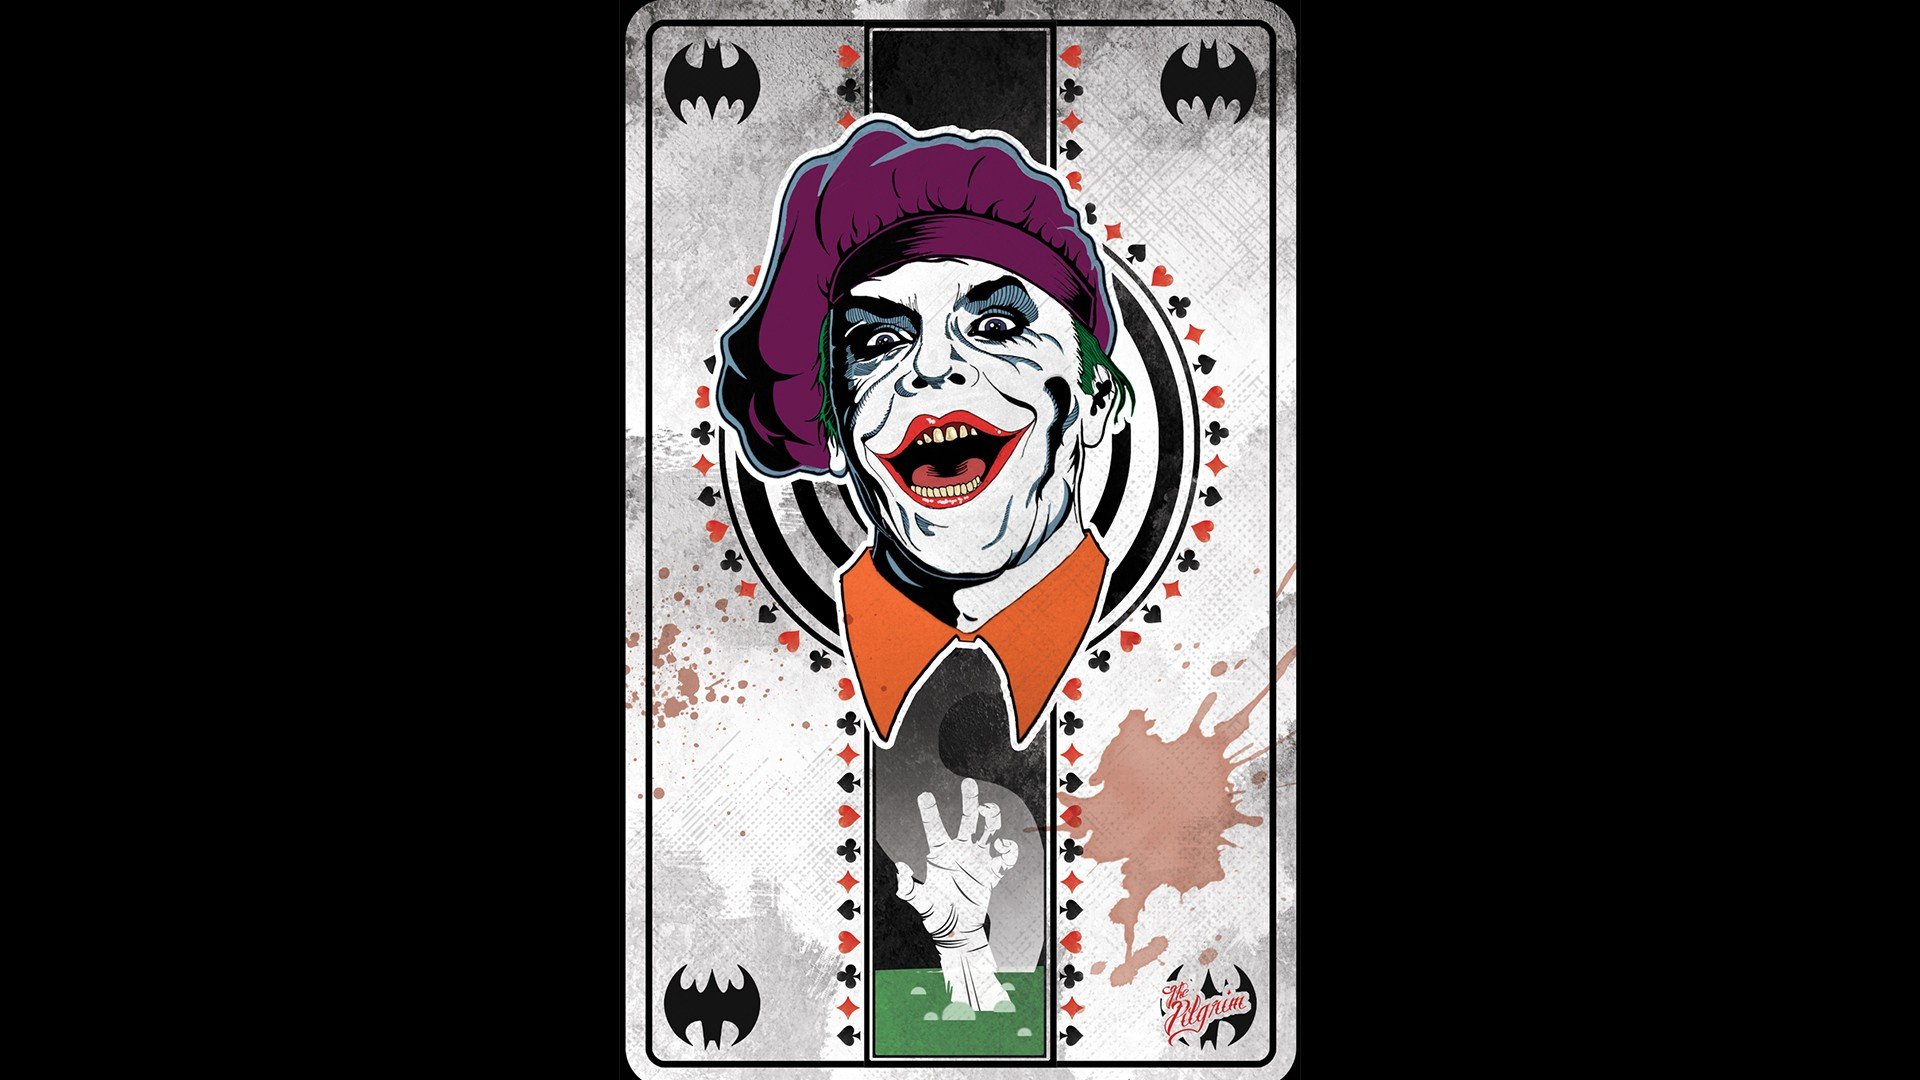 Joker 1080p Hd Wallpaper For Mobile